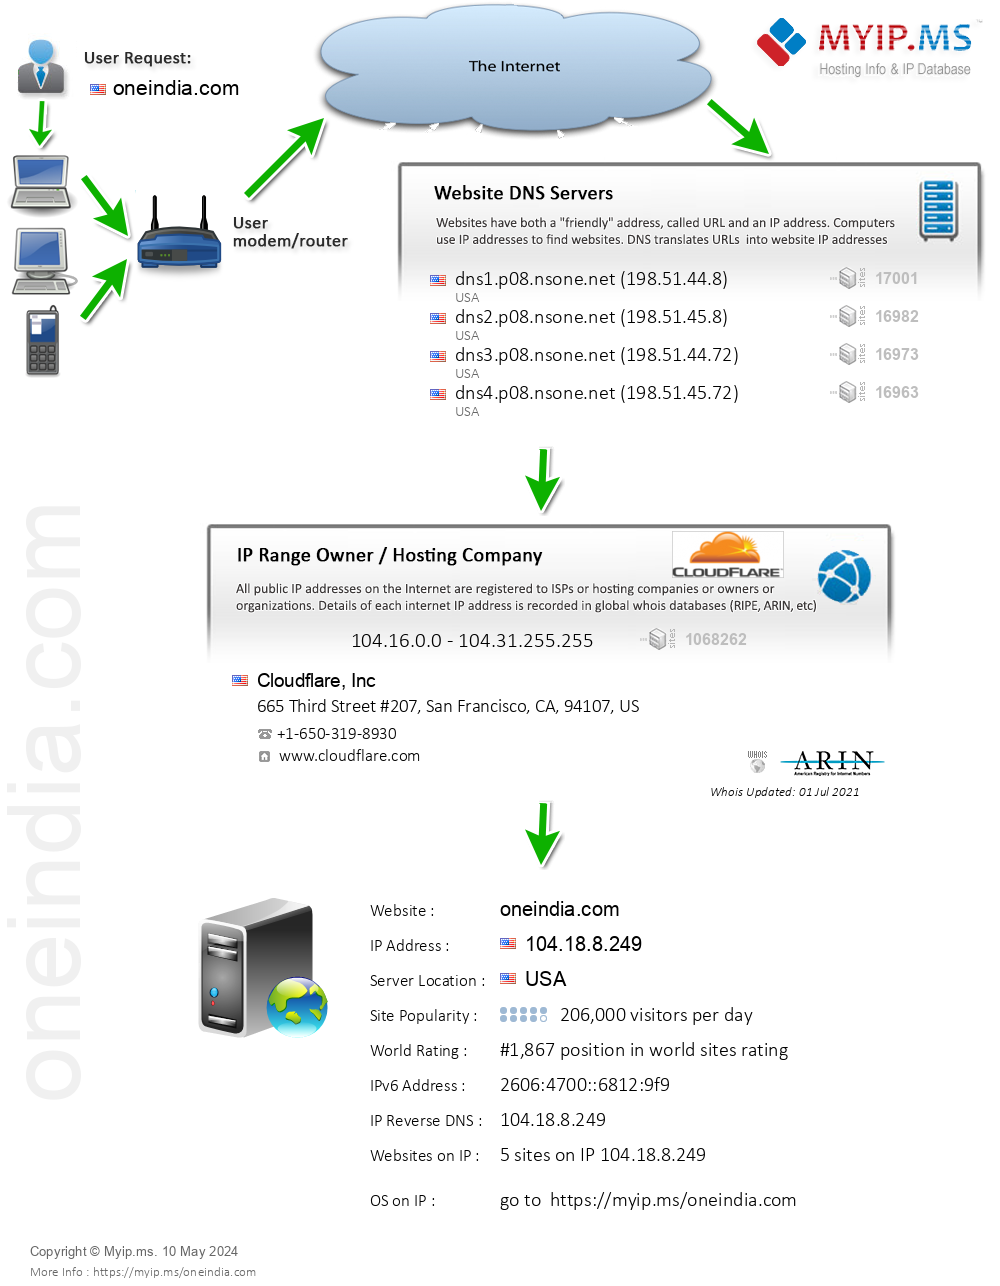 Oneindia.com - Website Hosting Visual IP Diagram